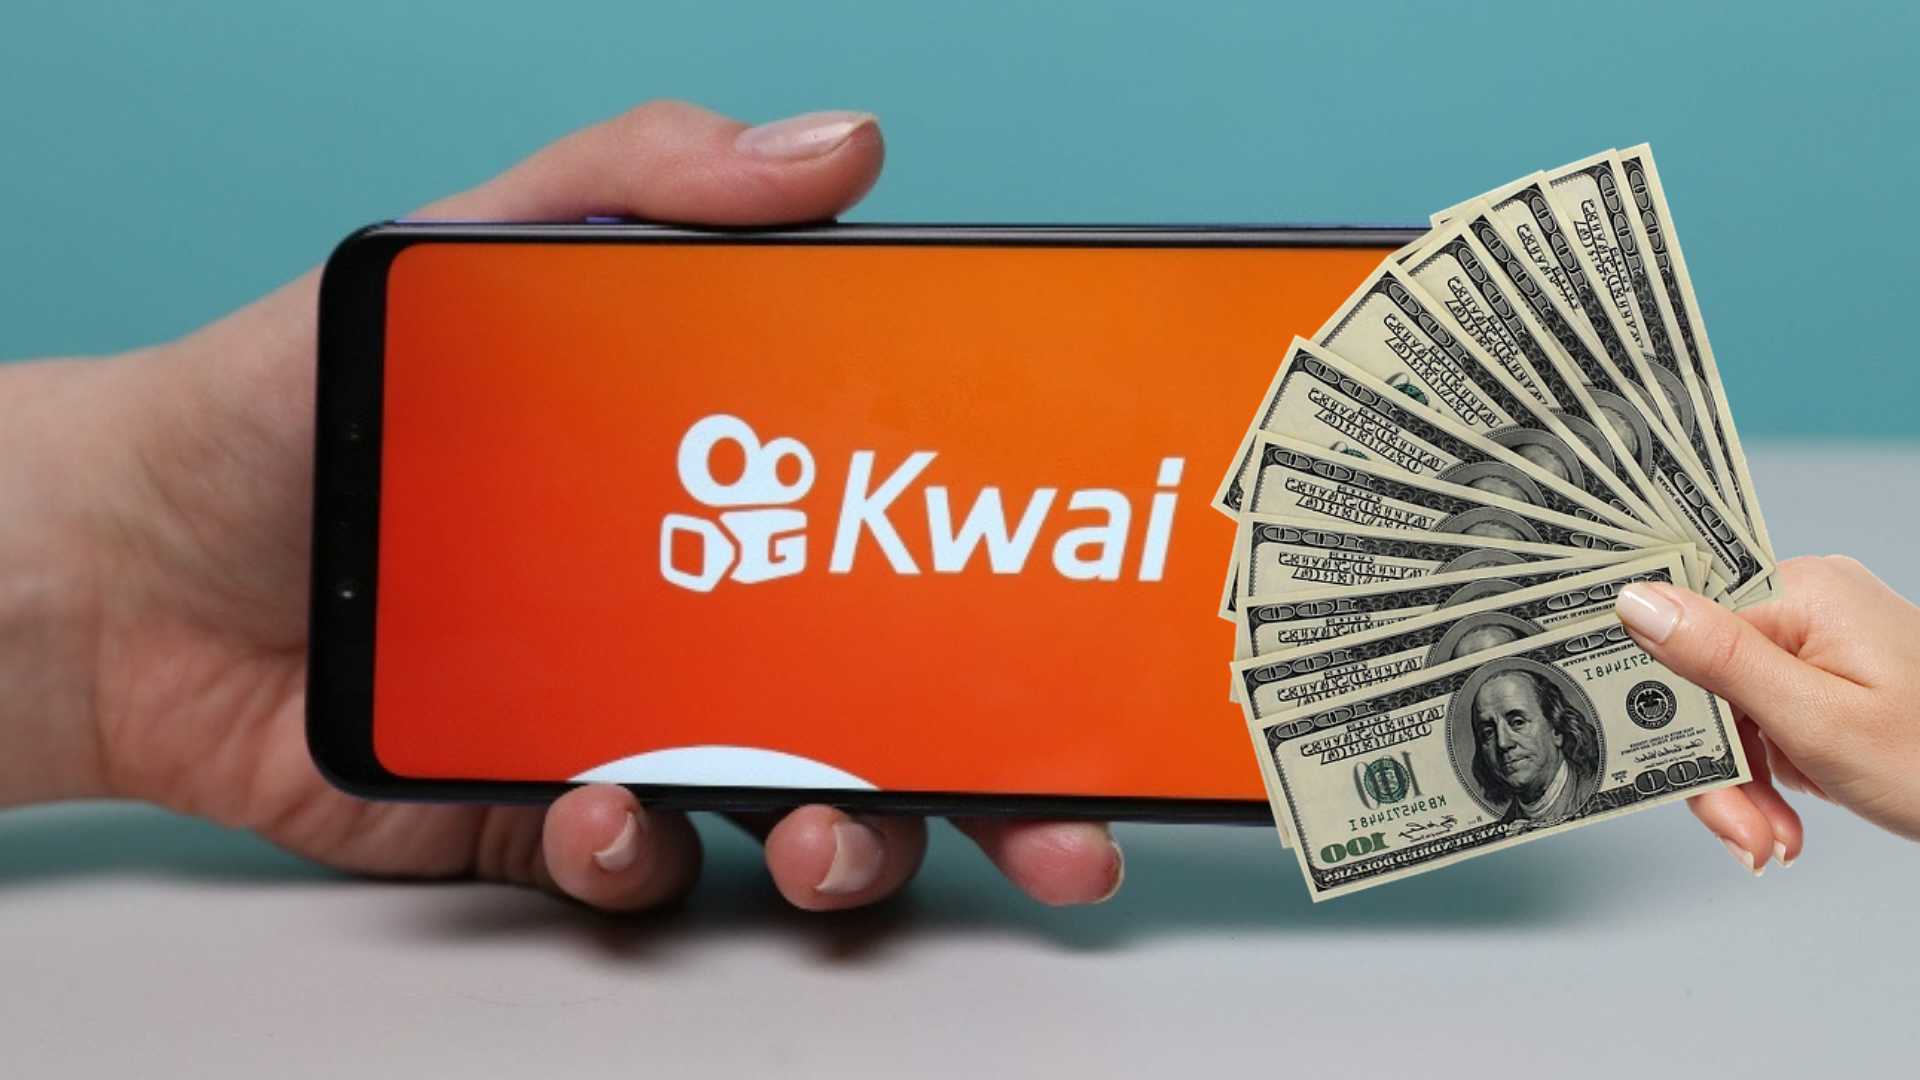 CÃ³mo ganar dinero con Kwai viendo videos